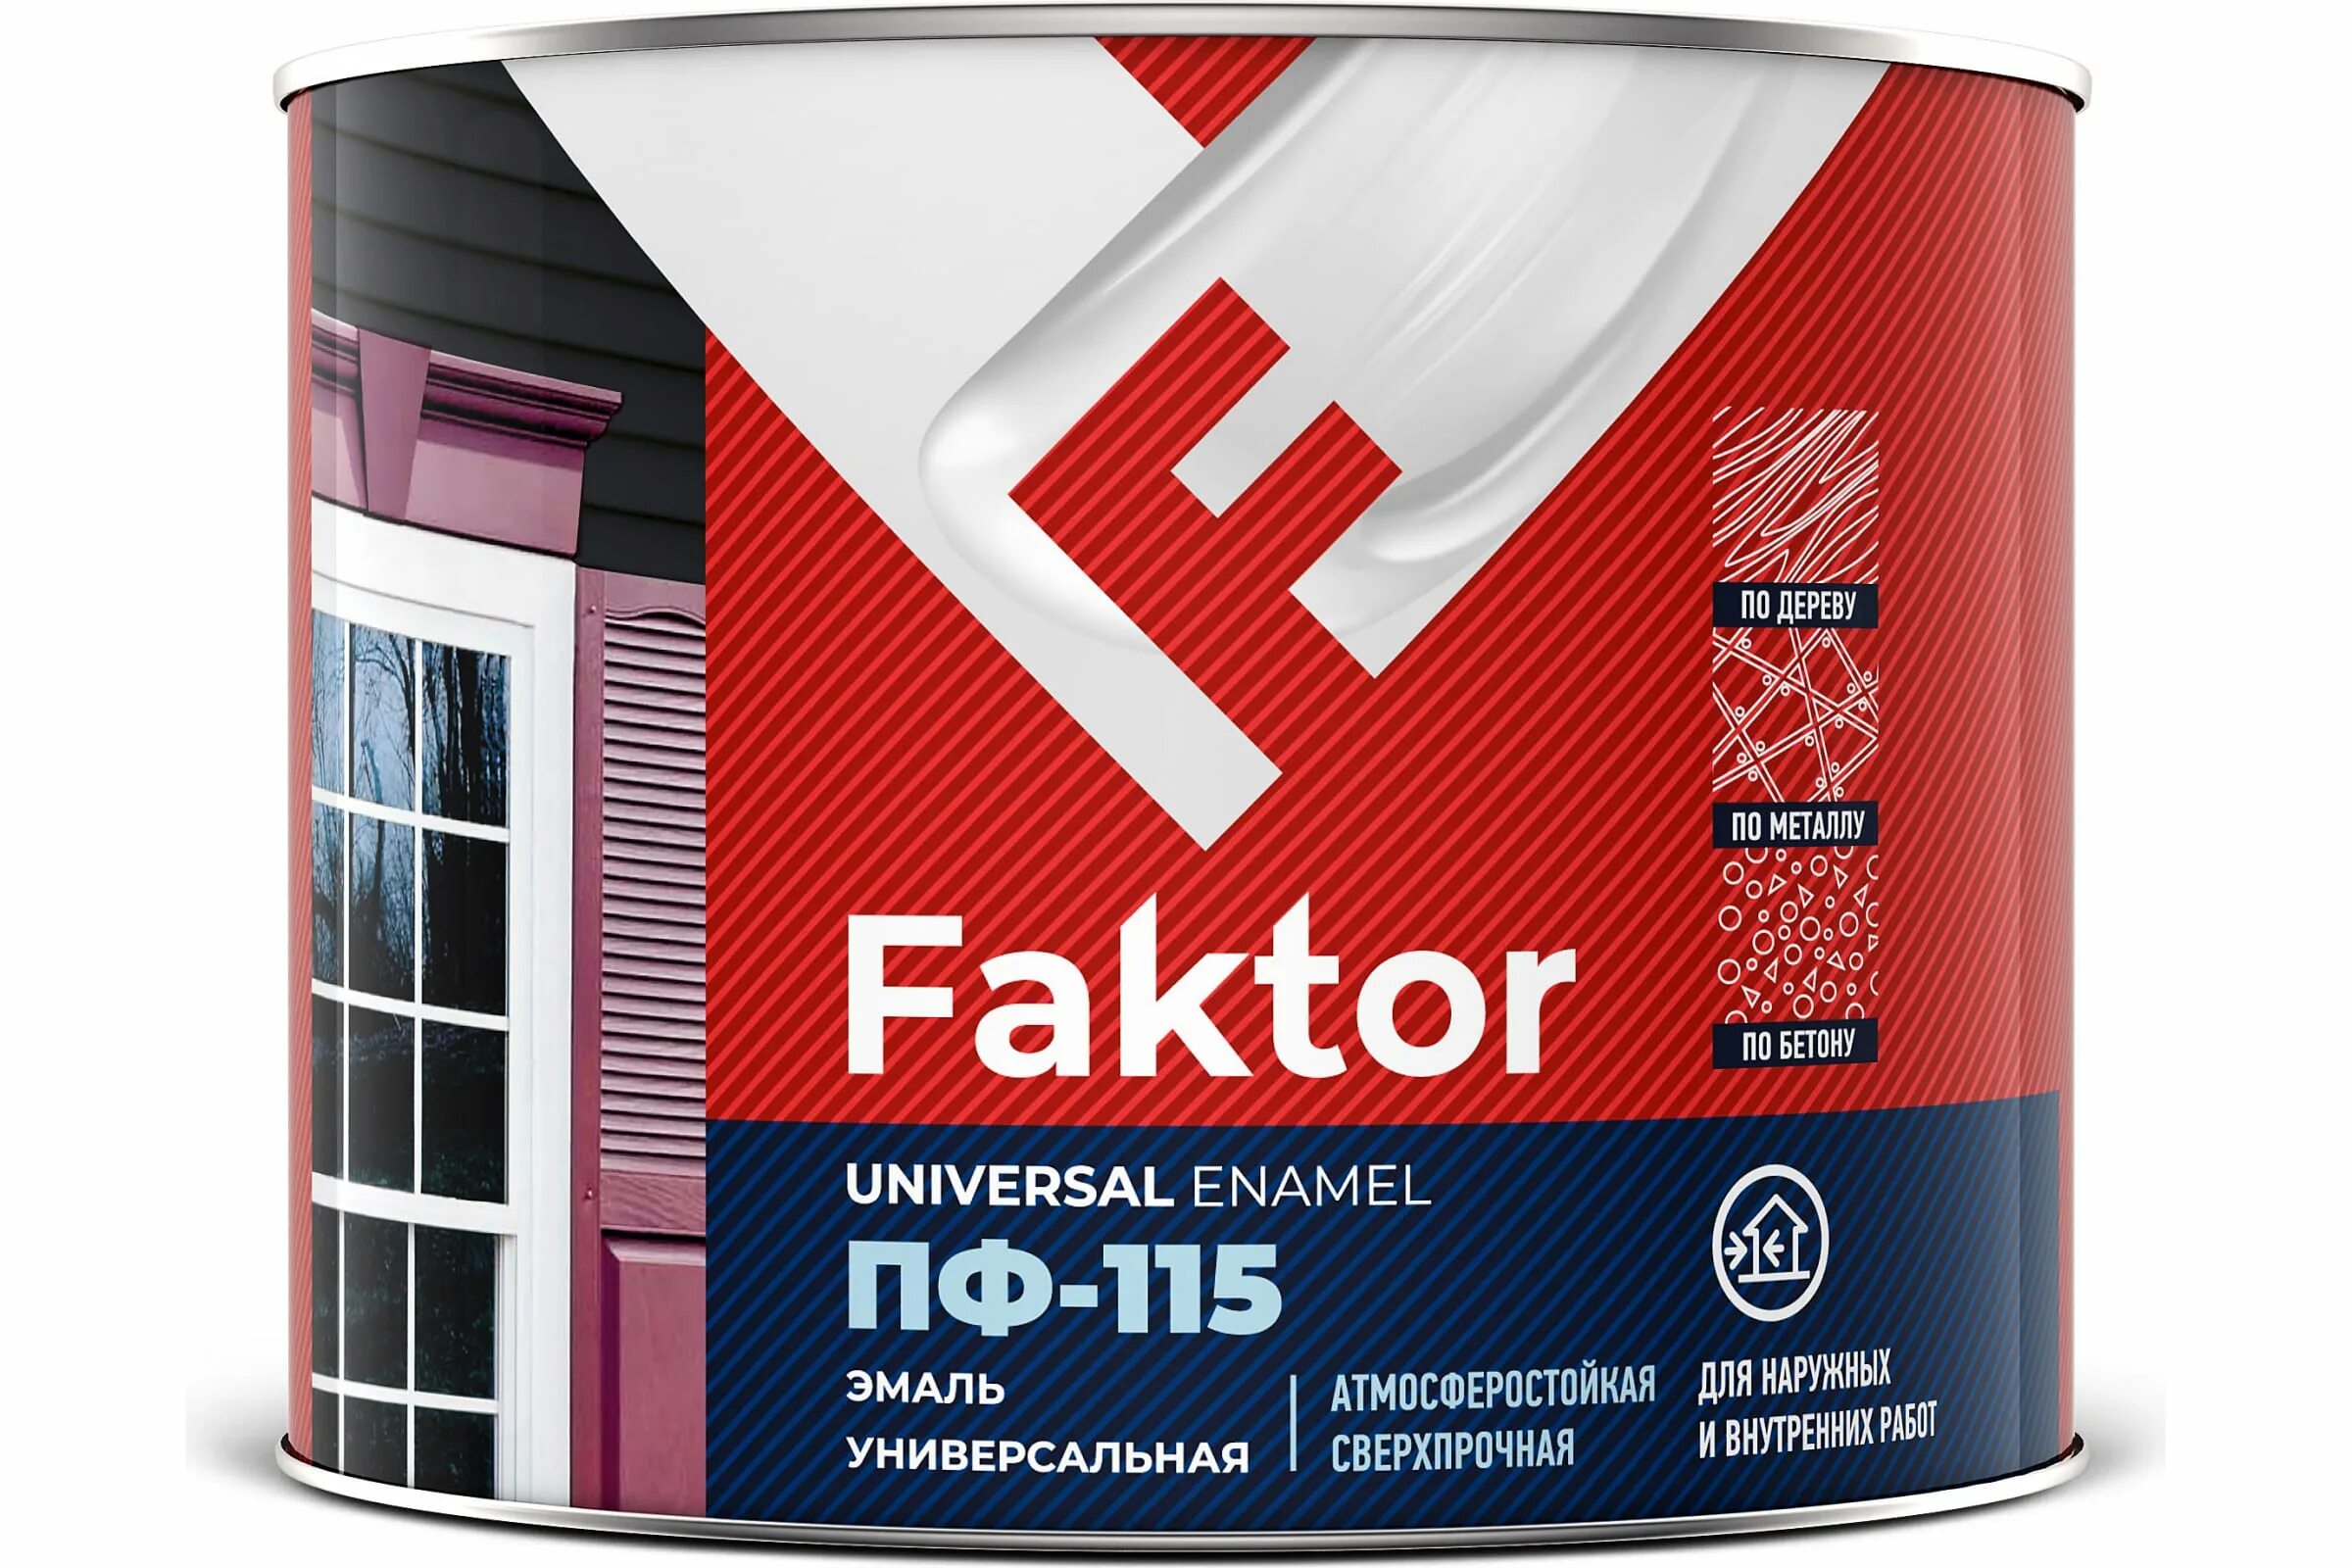 Эмаль faktor ПФ-115 белая, 1,9кг. ПФ-115 Ярославские краски faktor. Эмаль ПФ-115 faktor серая полуматовая 1,9 кг. Краска эмаль ПФ-115 серая.